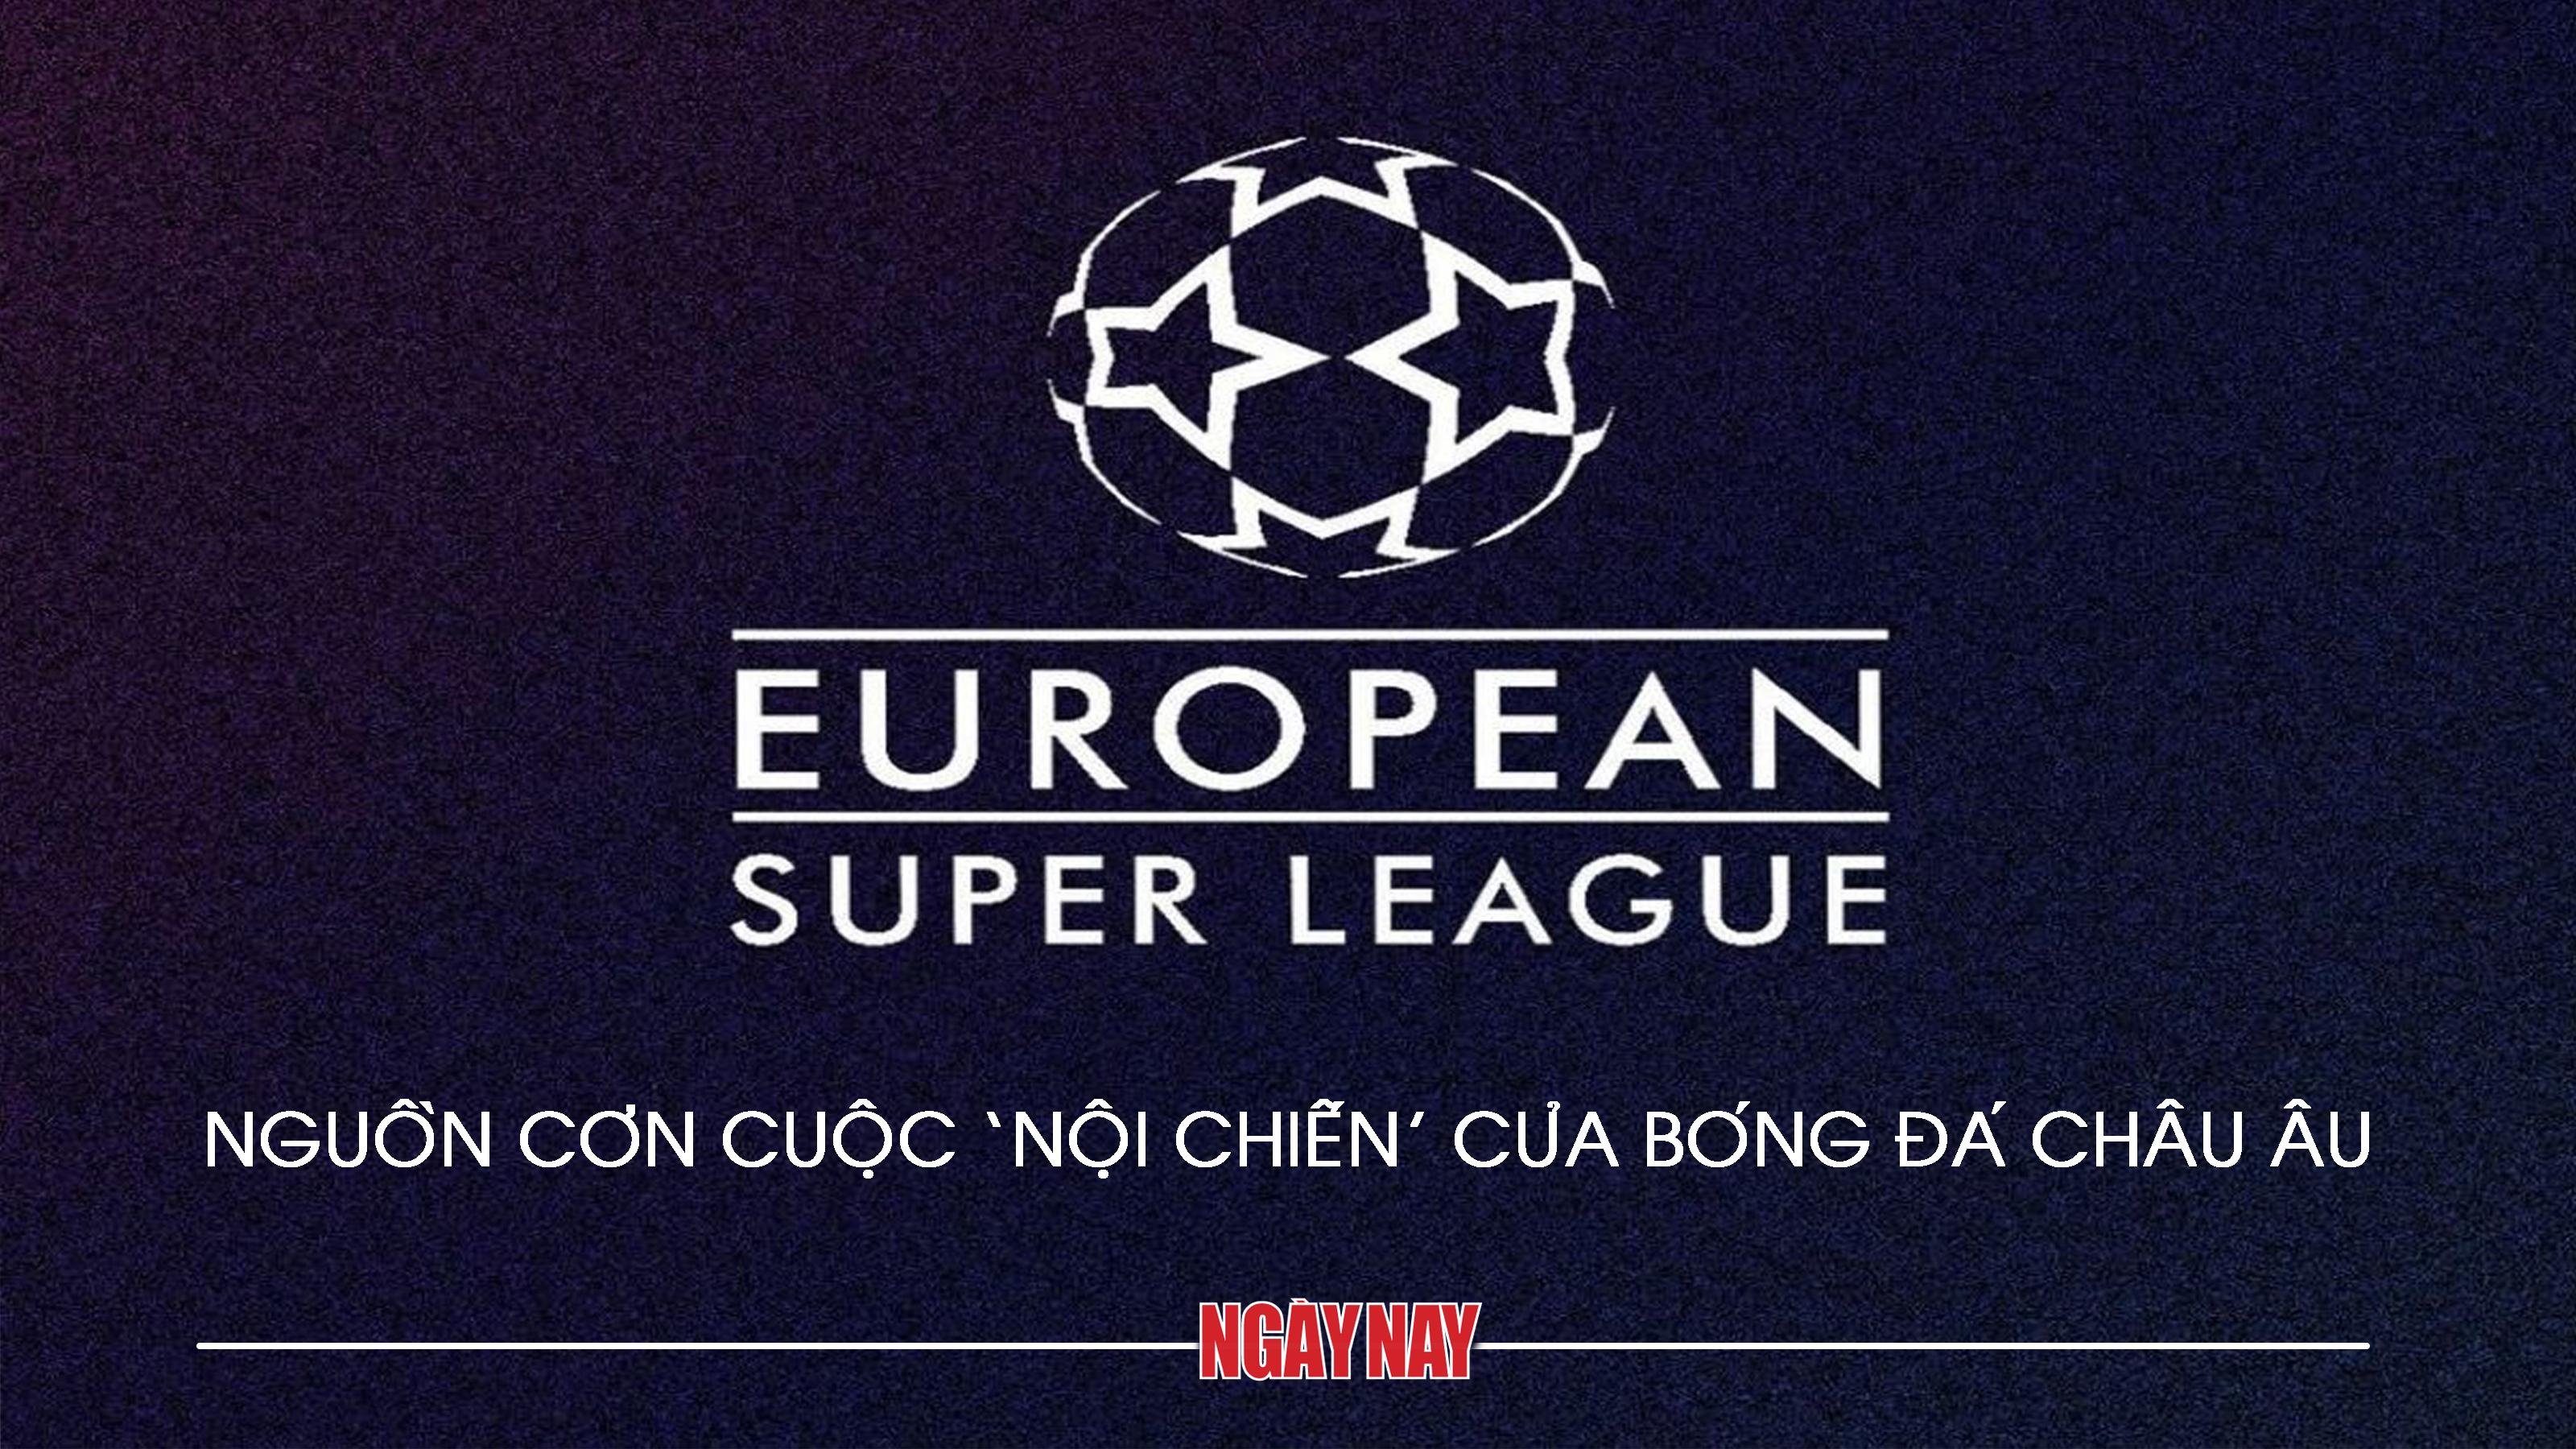 European Super League: Nguồn cơn cuộc 'nội chiến' của bóng đá châu Âu